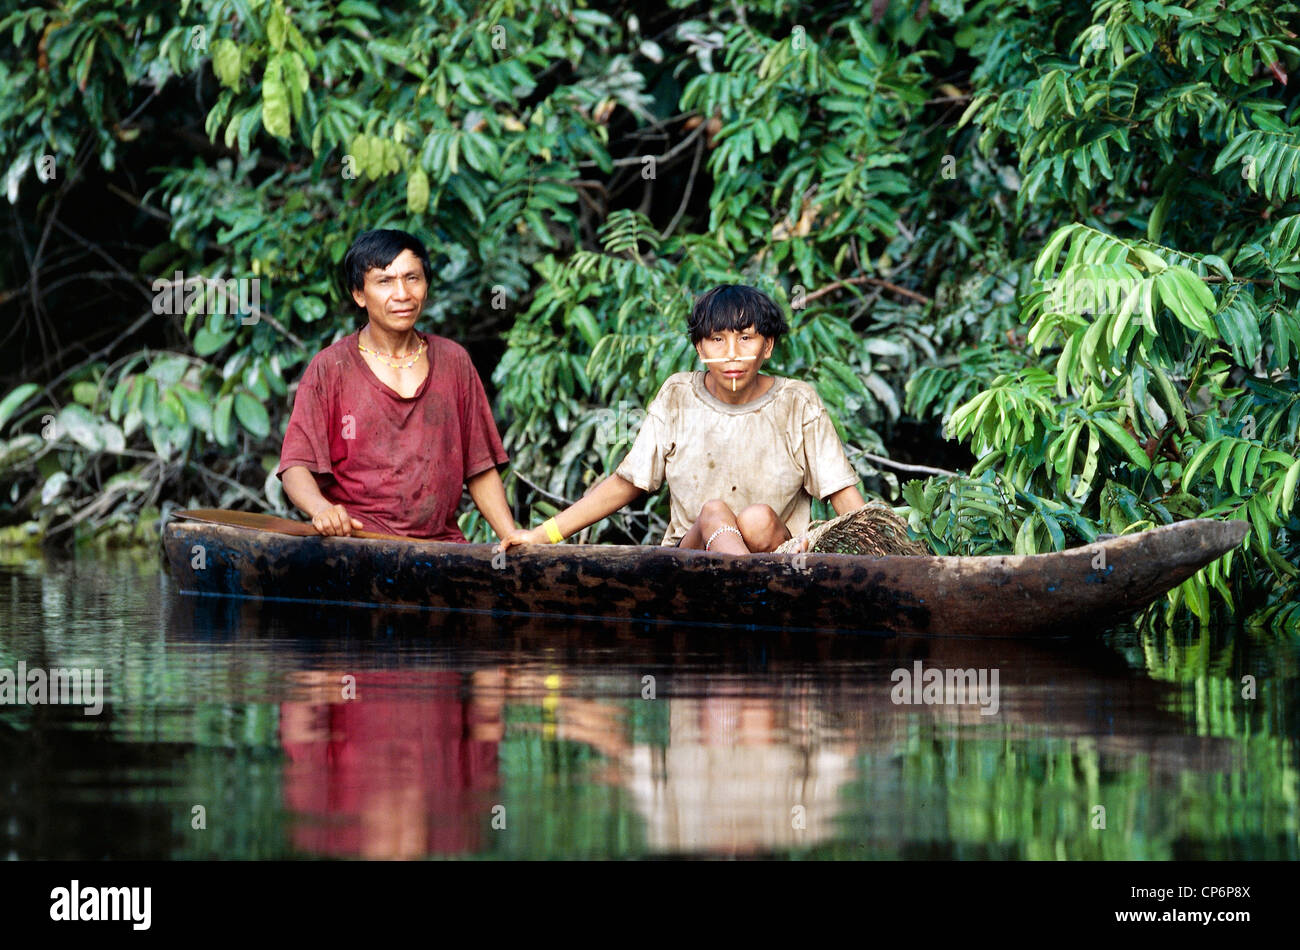 Venezuela - Guayana - Amazonas. Two Yanomami Indian tribe Cavaroa on a canoe along the Rio Siapa Stock Photo